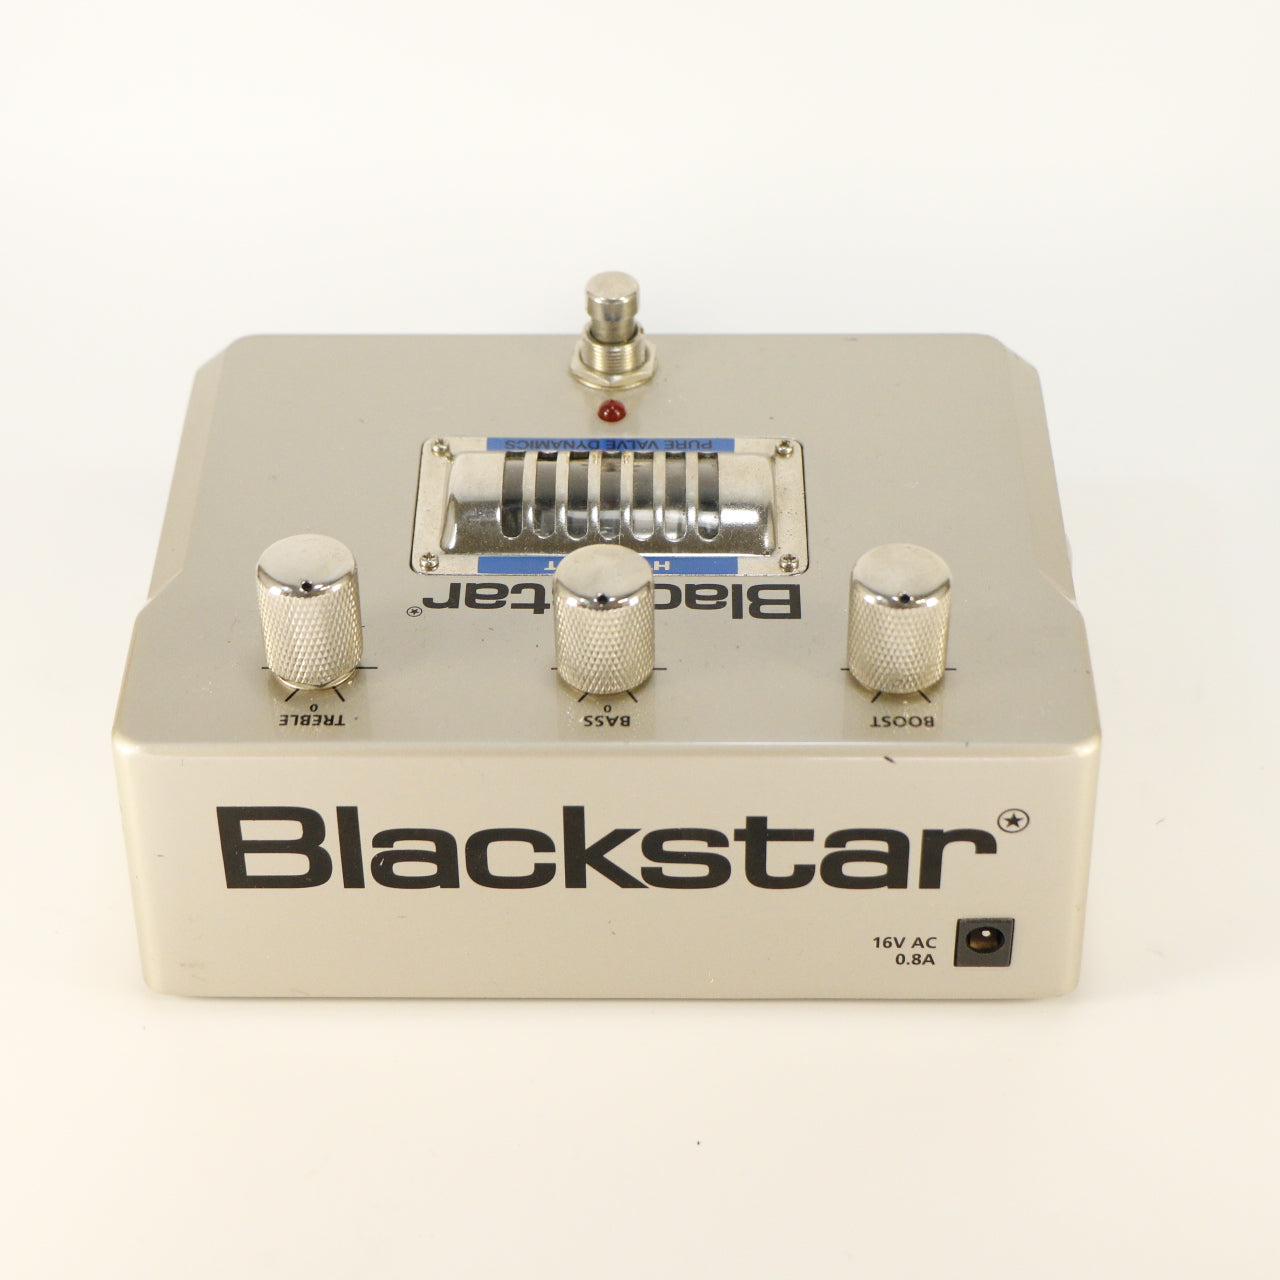 Blackstar HT Boost (met 16v EU Adapter)